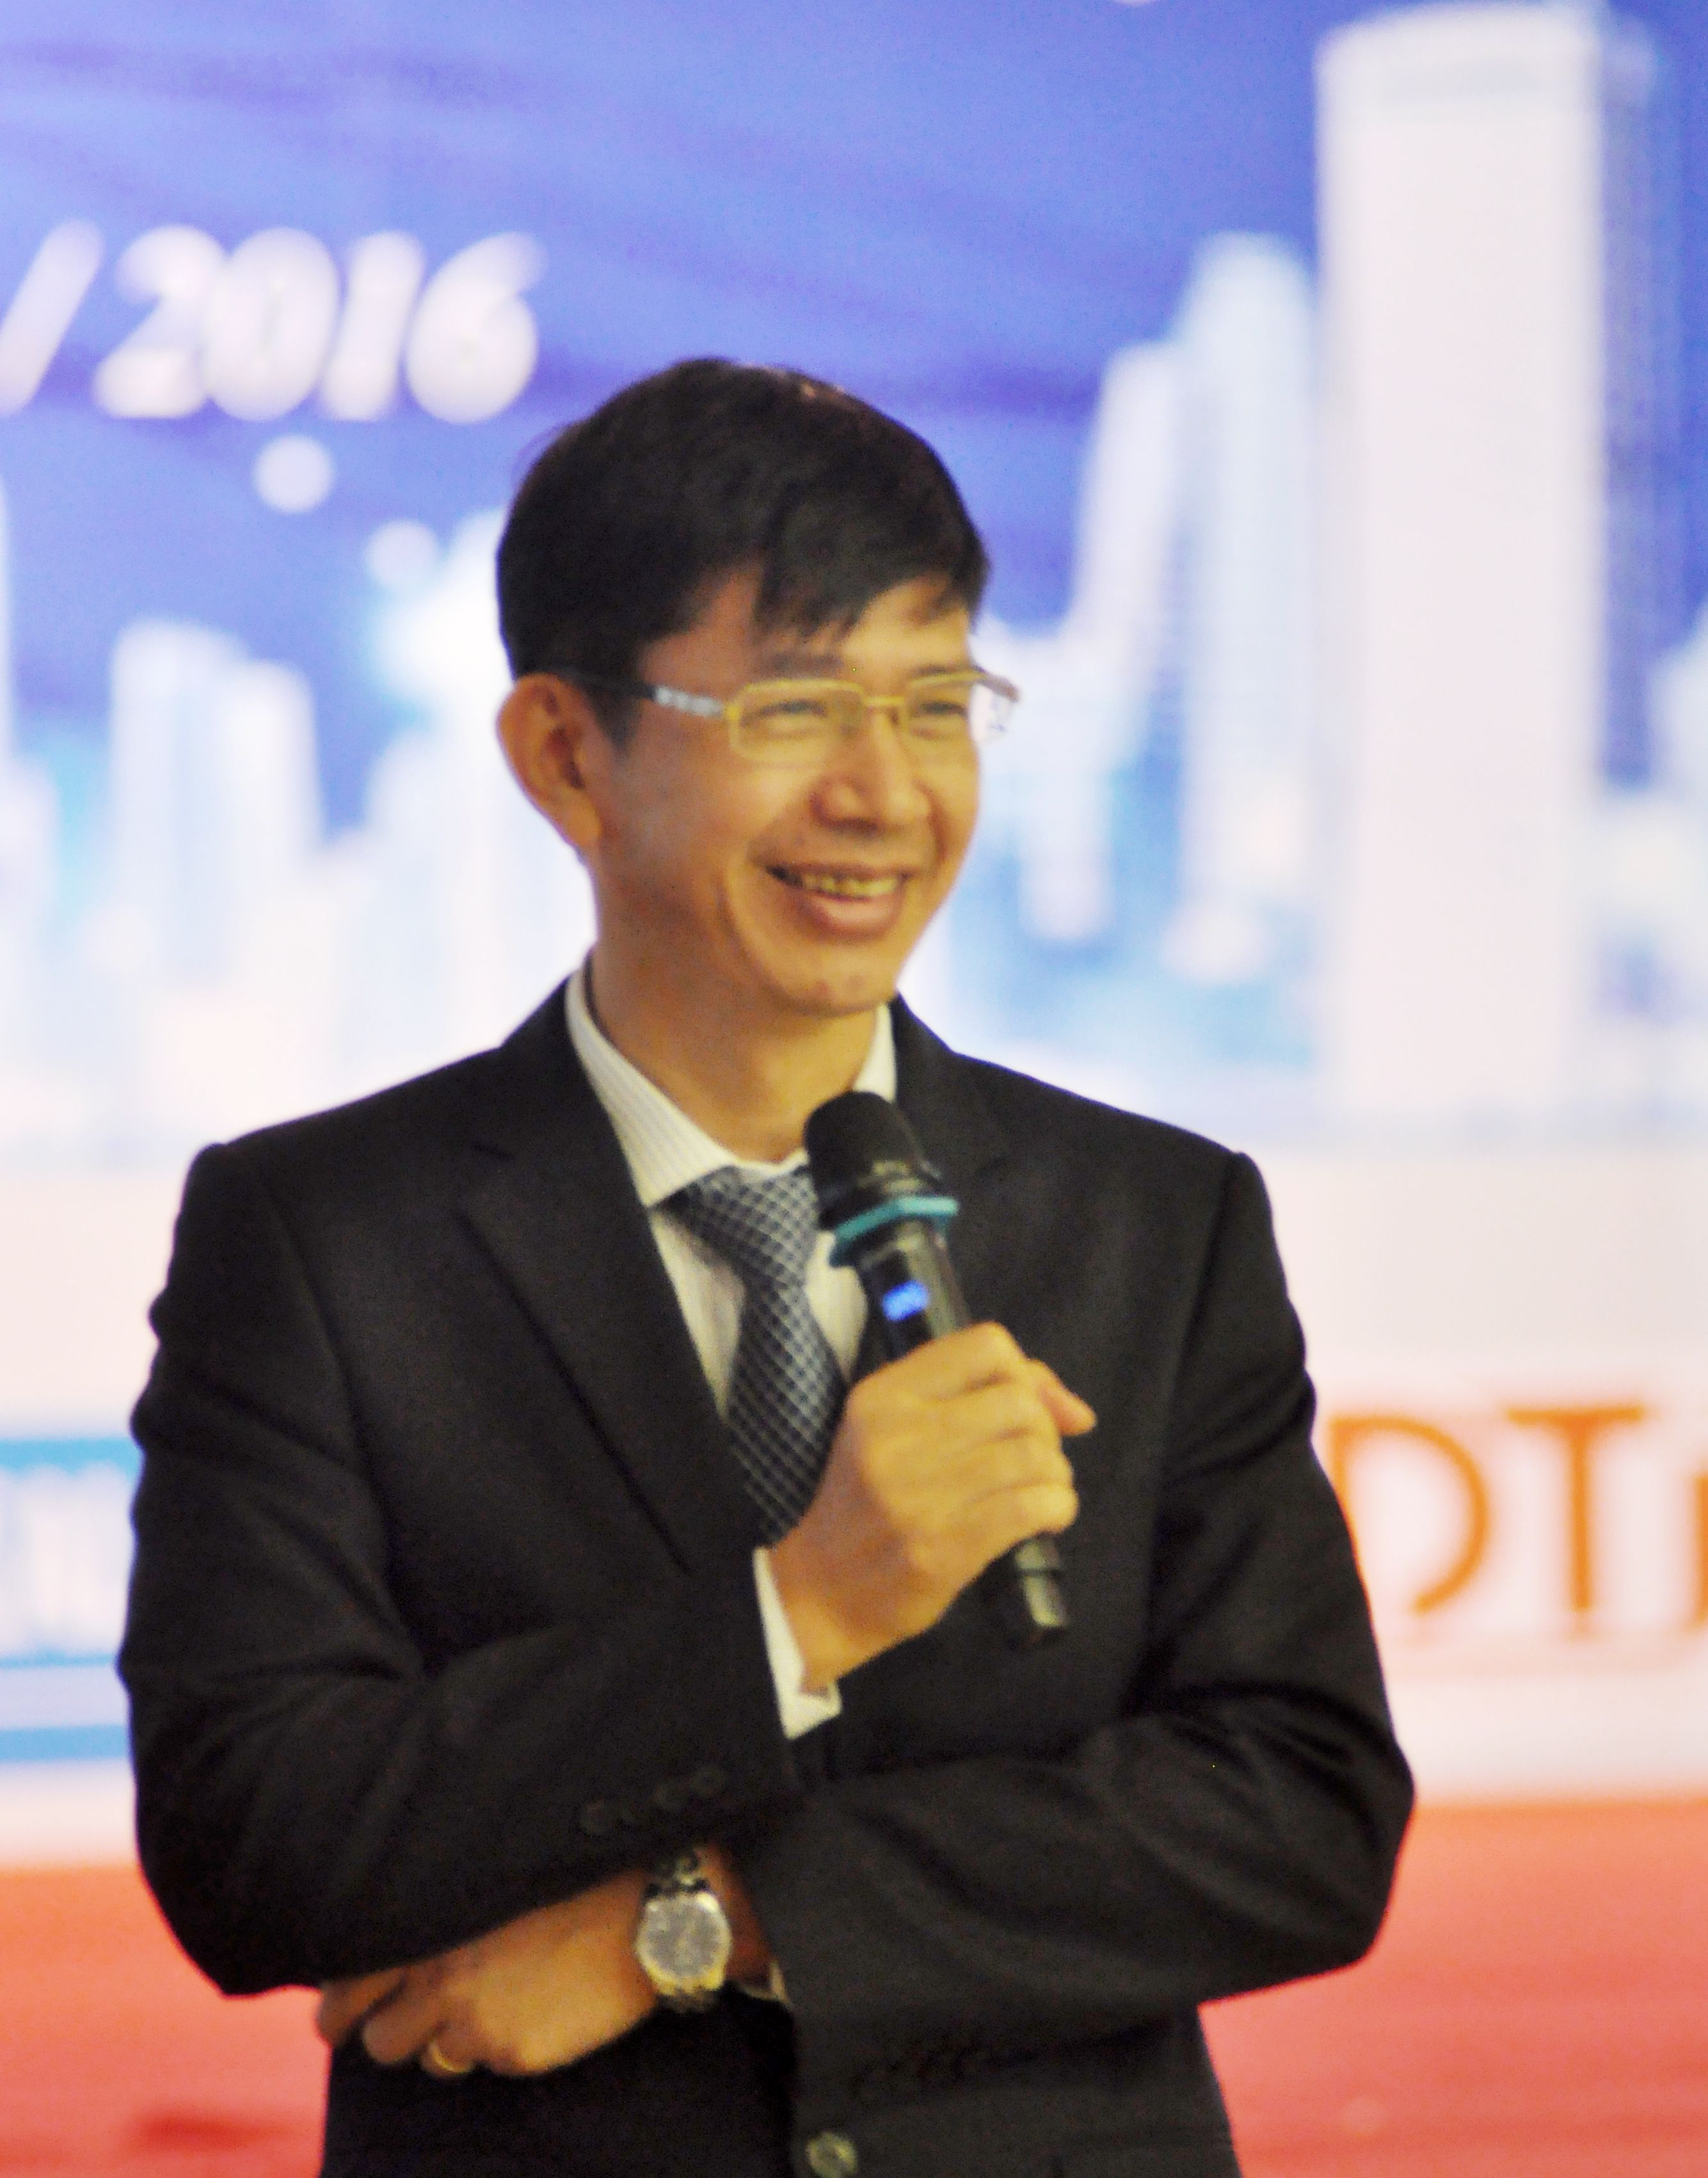 ông Nguyễn Quốc Khánh, Tổng Giám đốc, Chủ tịch HĐQT CTCP Đầu tư và Phân phối DTJ kiêm Chủ tịch Liên minh G5